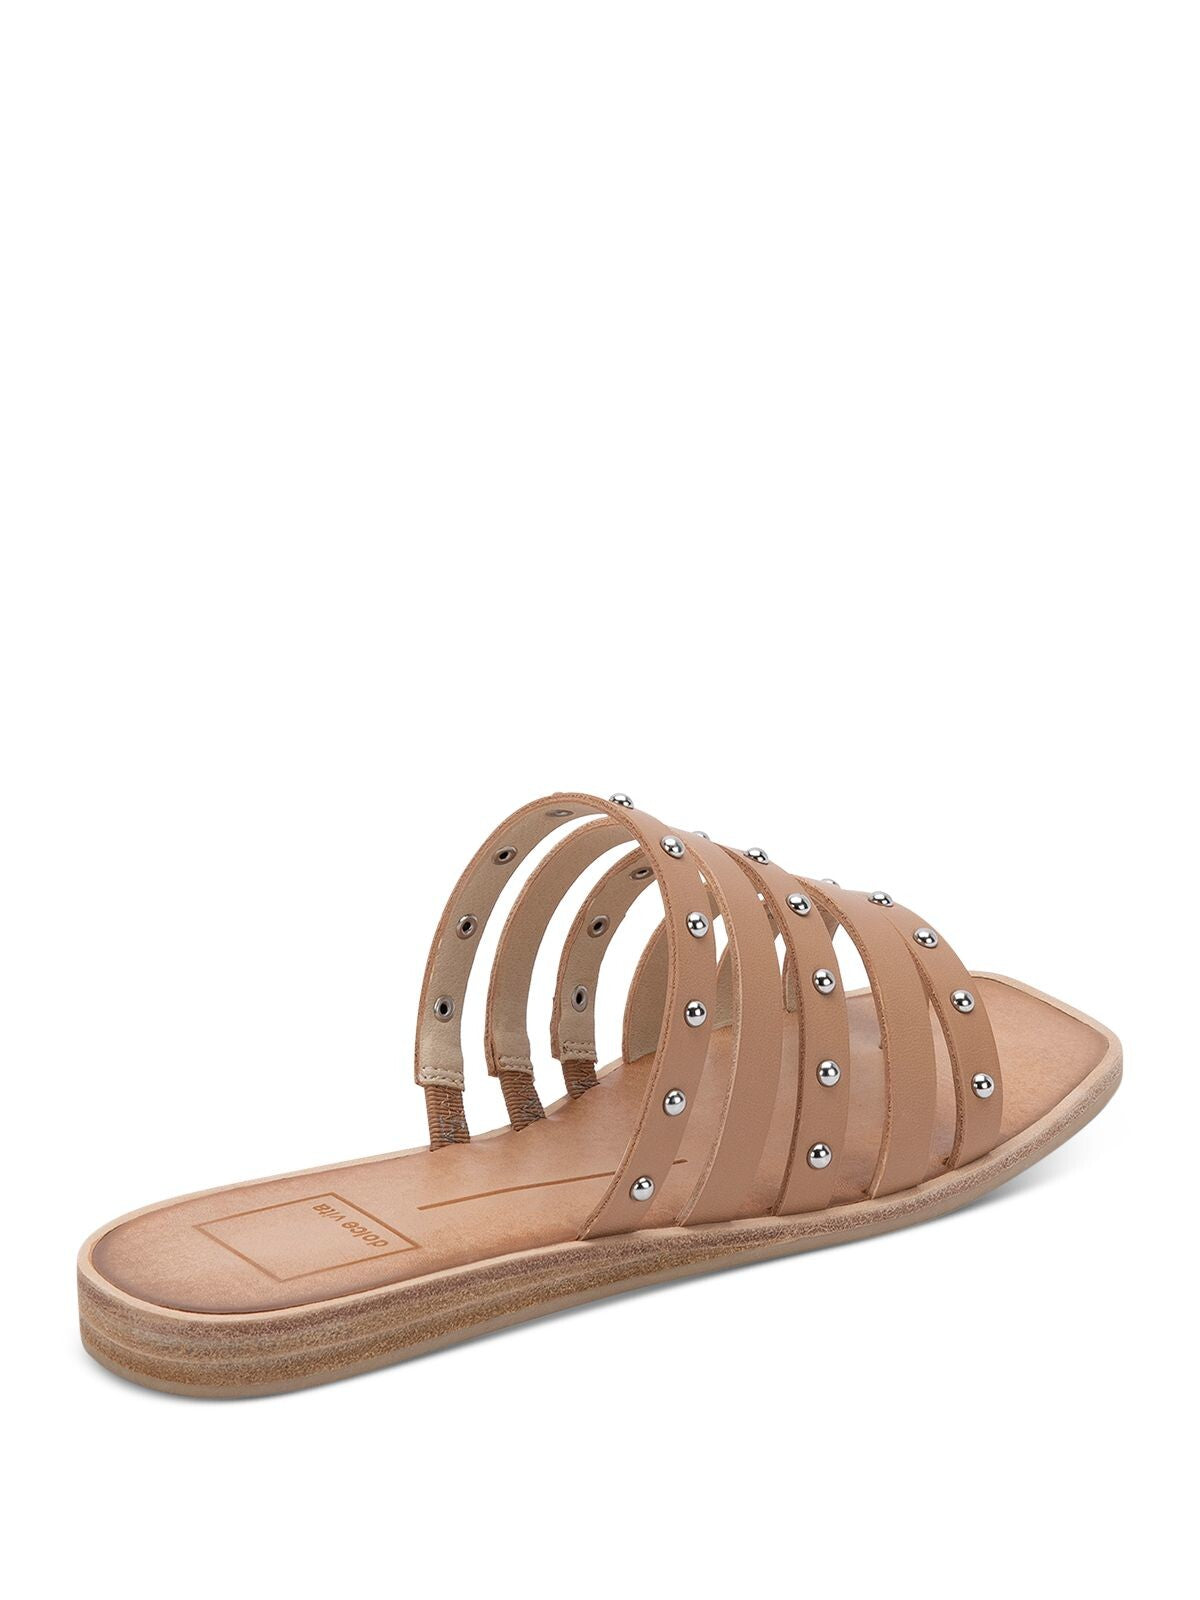 DOLCE VITA Womens Beige Toe-Loop Kaylee Square Toe Block Heel Slip On Slide Sandals Shoes M